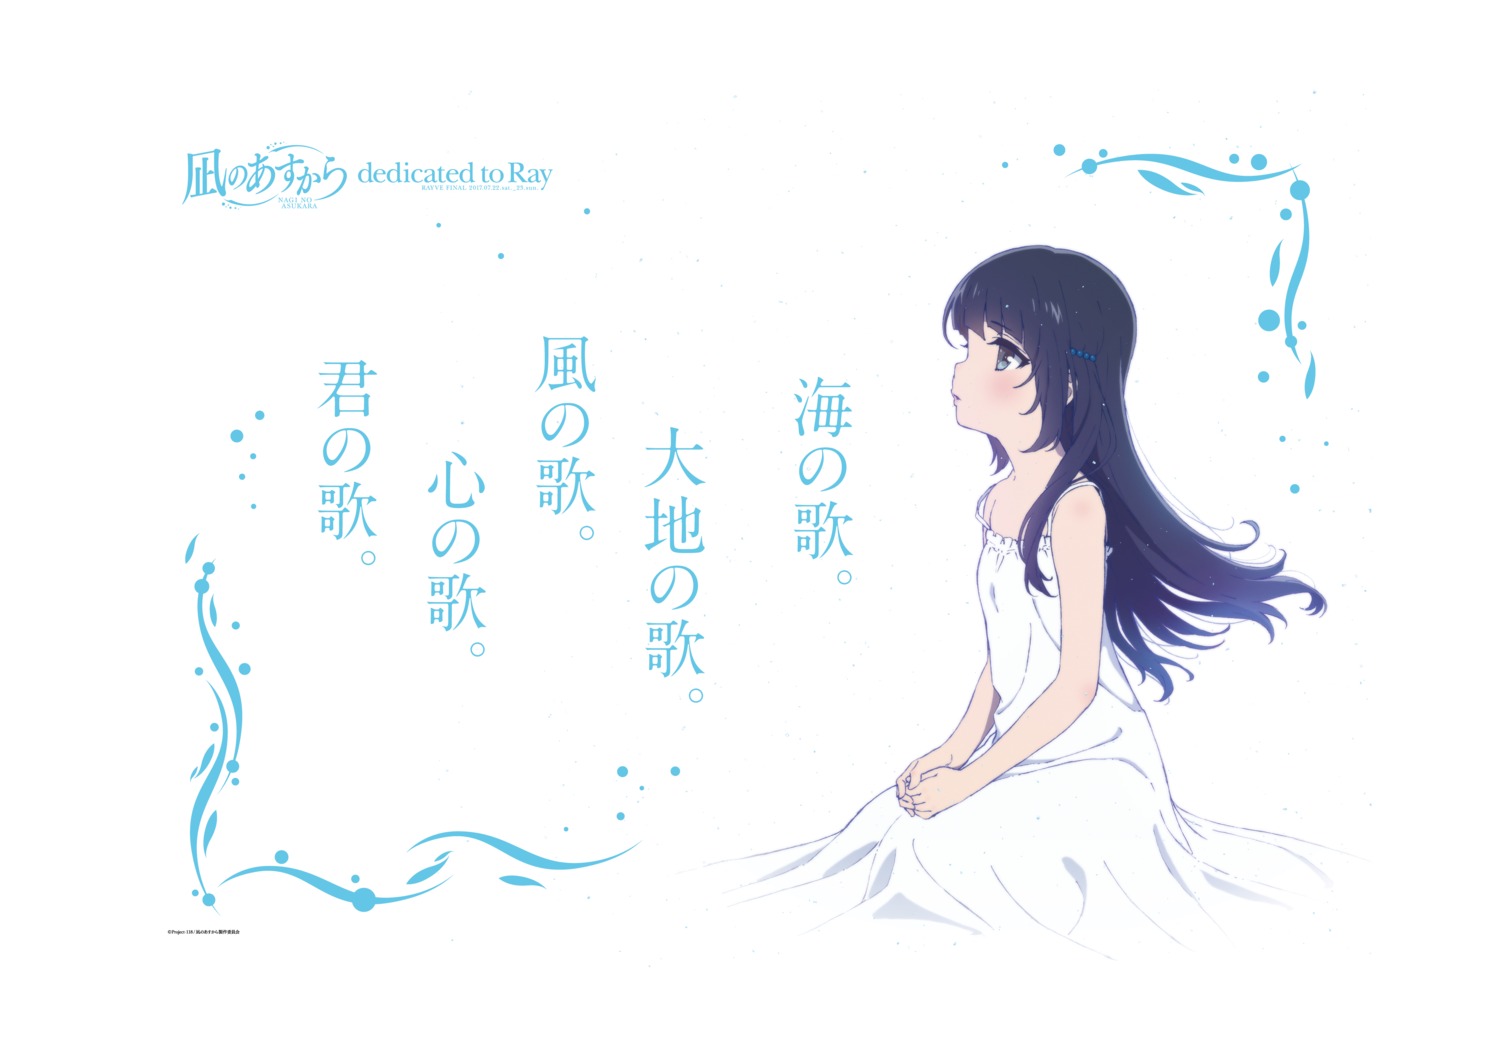 Nagi no Asukara - Miuna  Anime, Anime art girl, Anime art